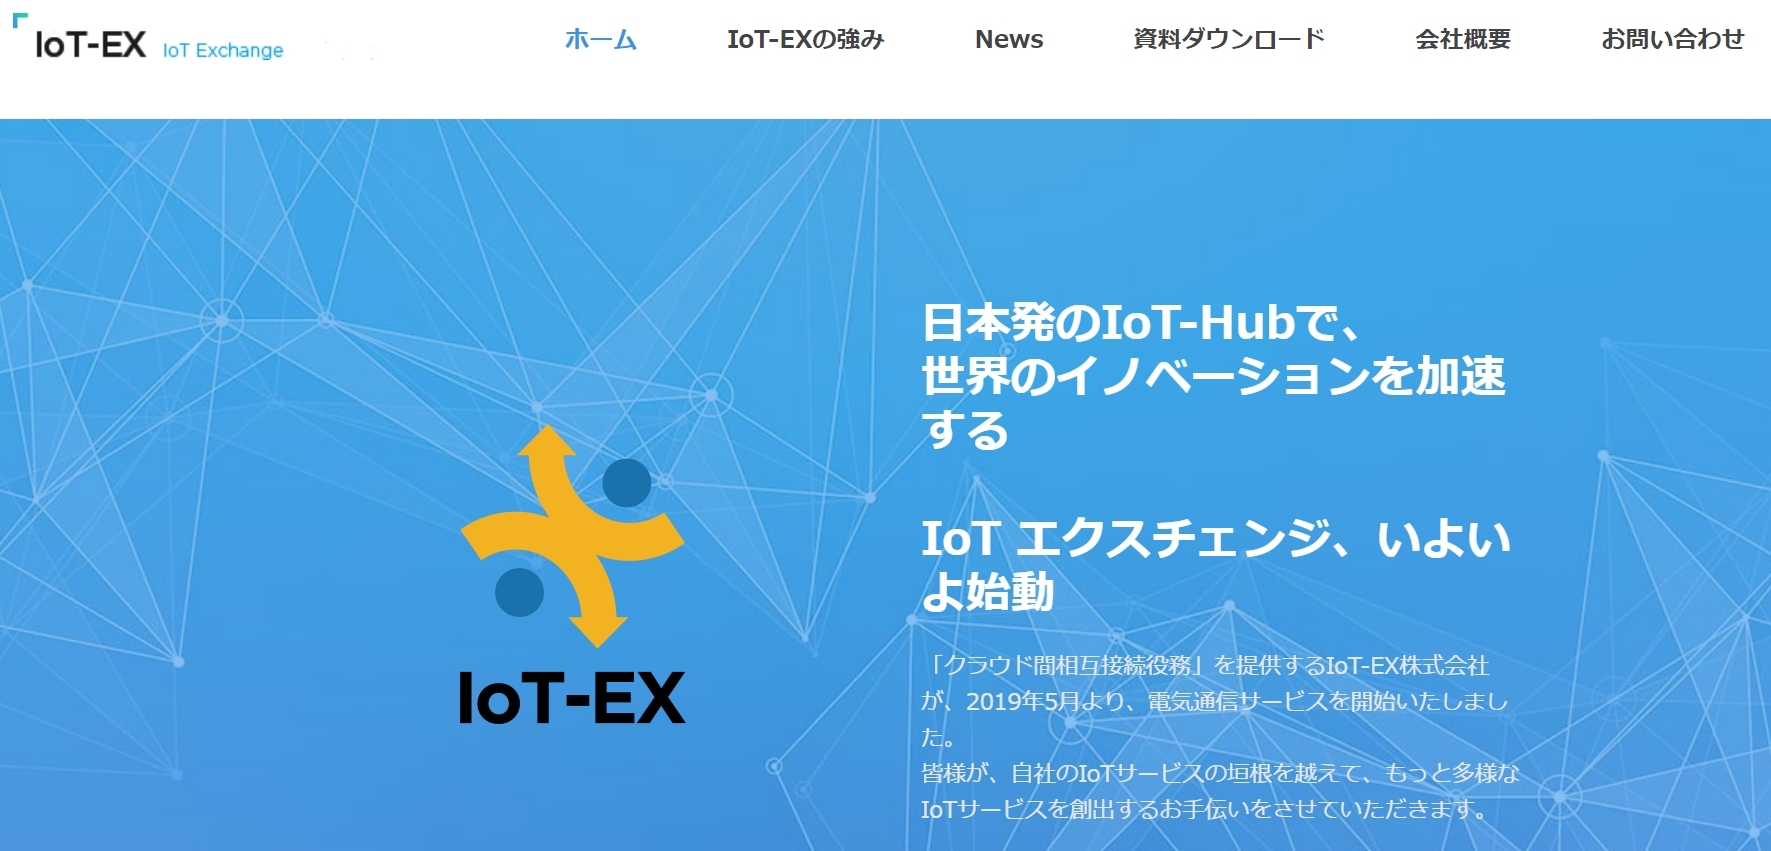 IoT-EX